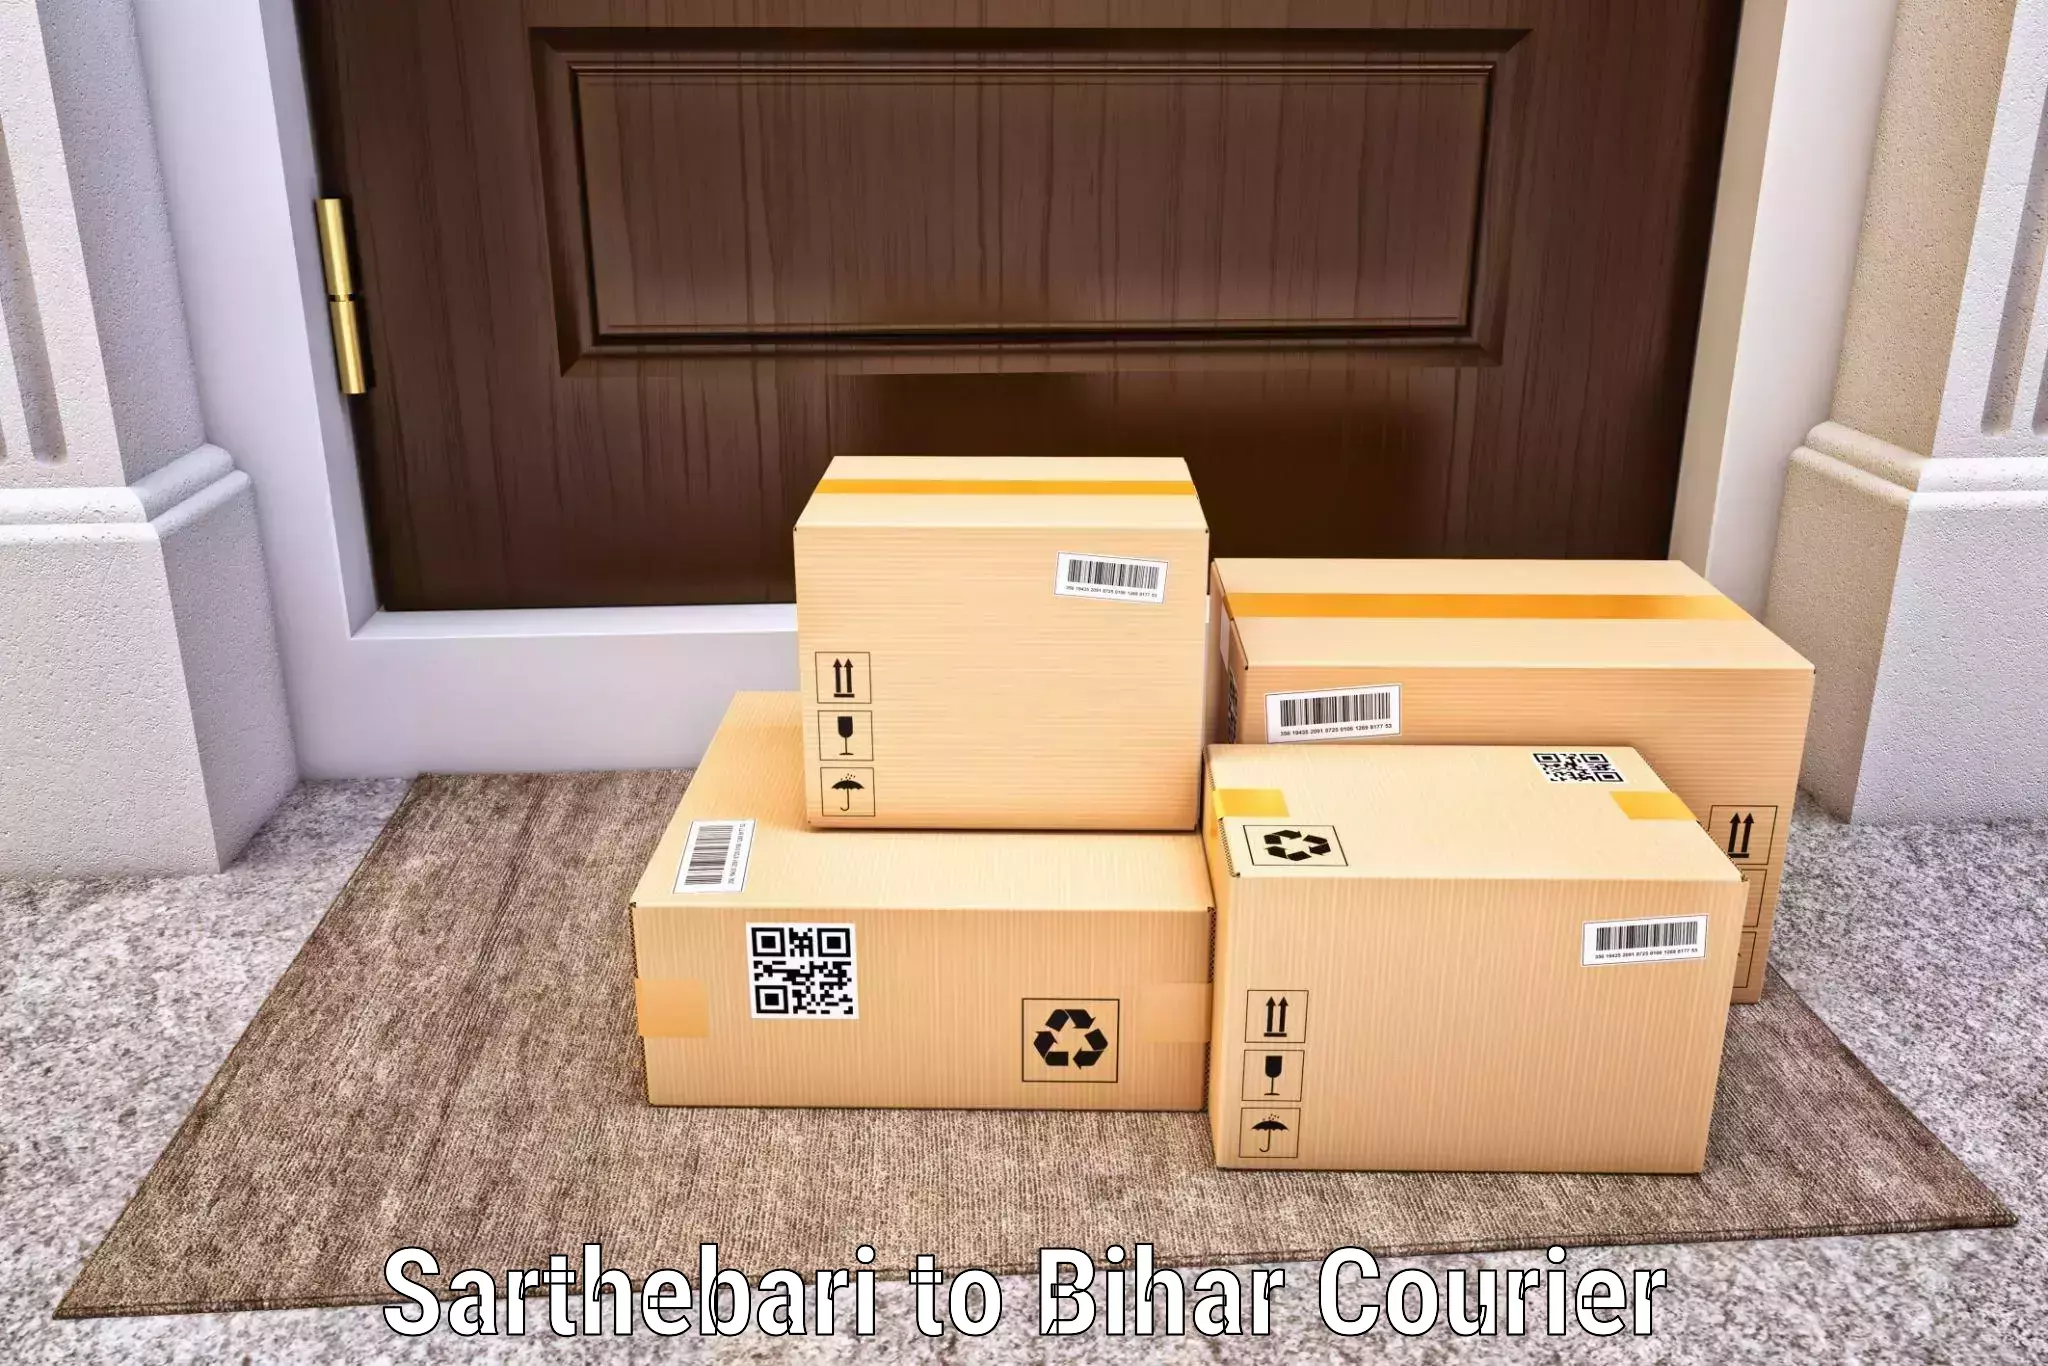 24-hour courier service Sarthebari to Palasi Araria